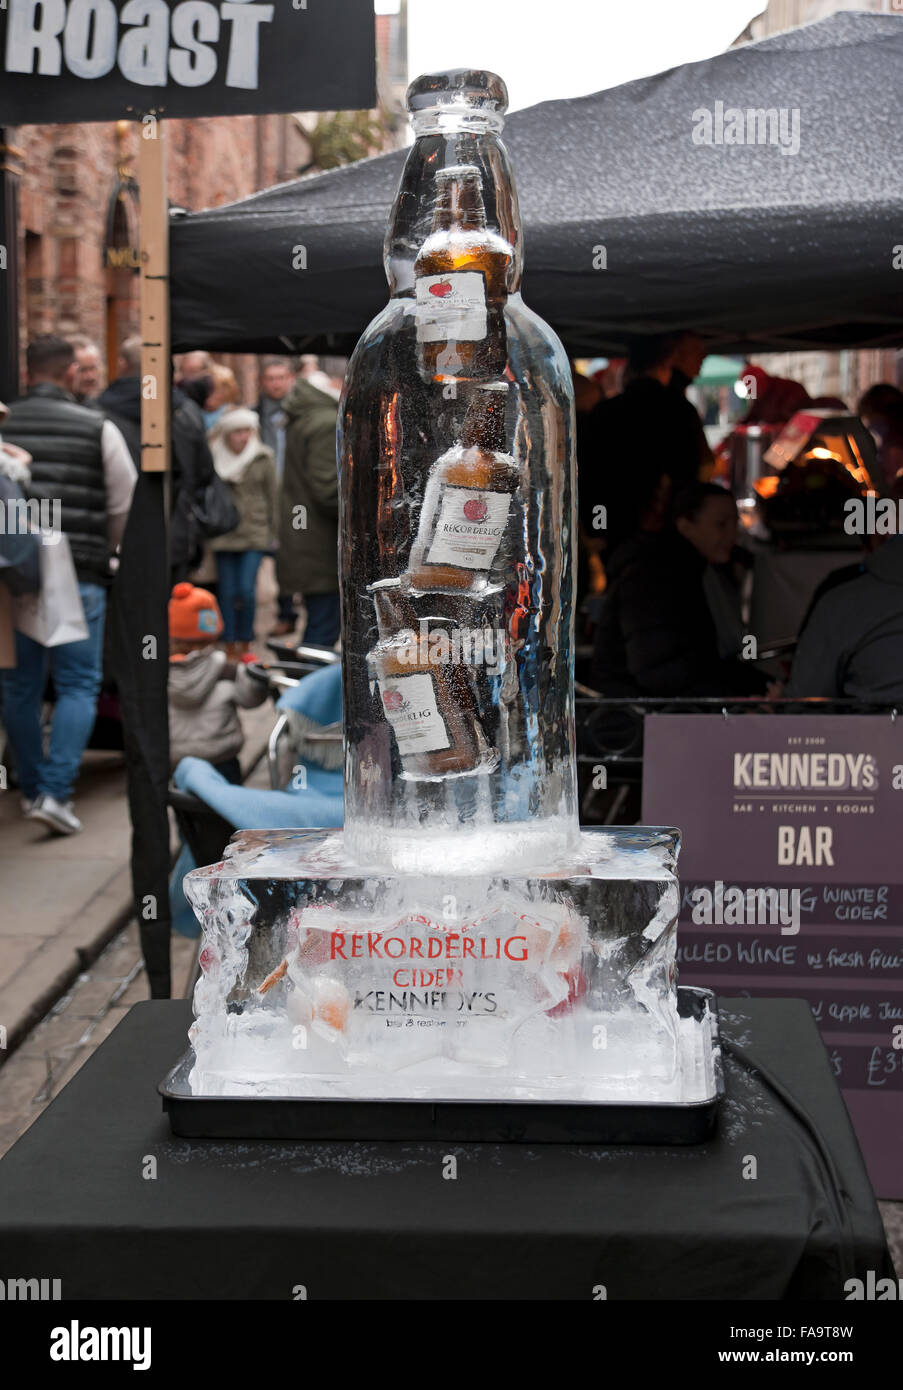 Sculpture sur glace d'une bouteille contenant des bouteilles de cidre sur la piste de glace en hiver York North Yorkshire Angleterre Royaume-Uni Grande-Bretagne Banque D'Images